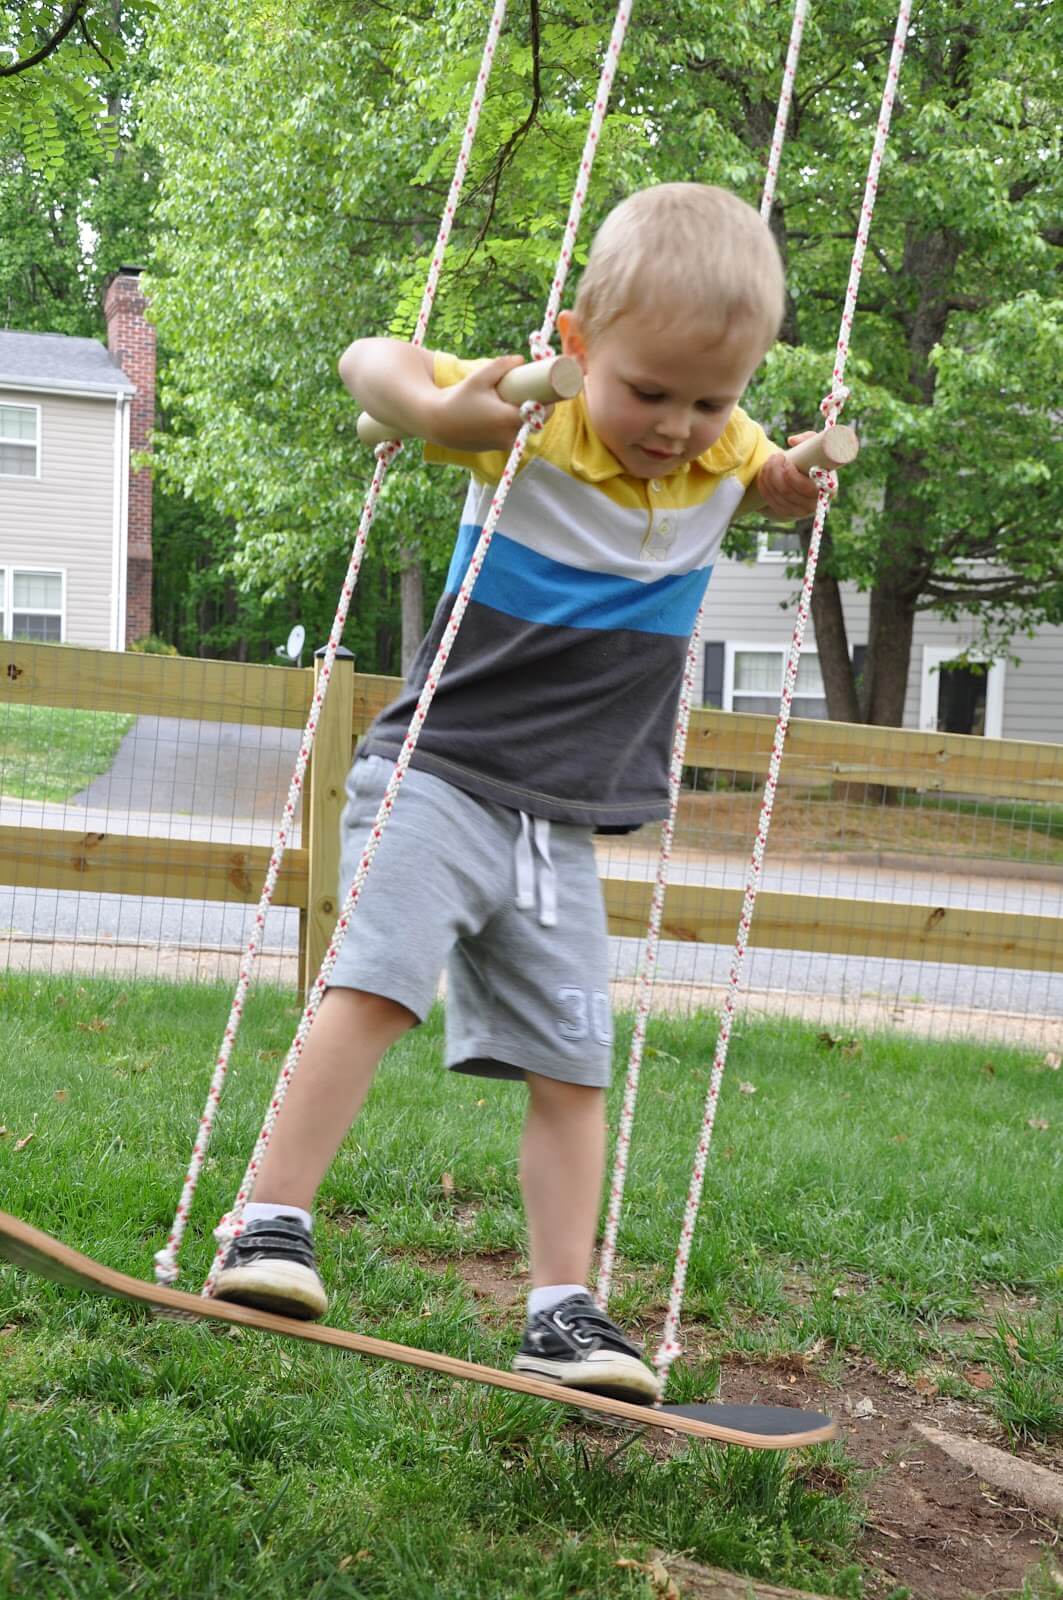 16 Fun DIY Backyard Activities For Your Kids